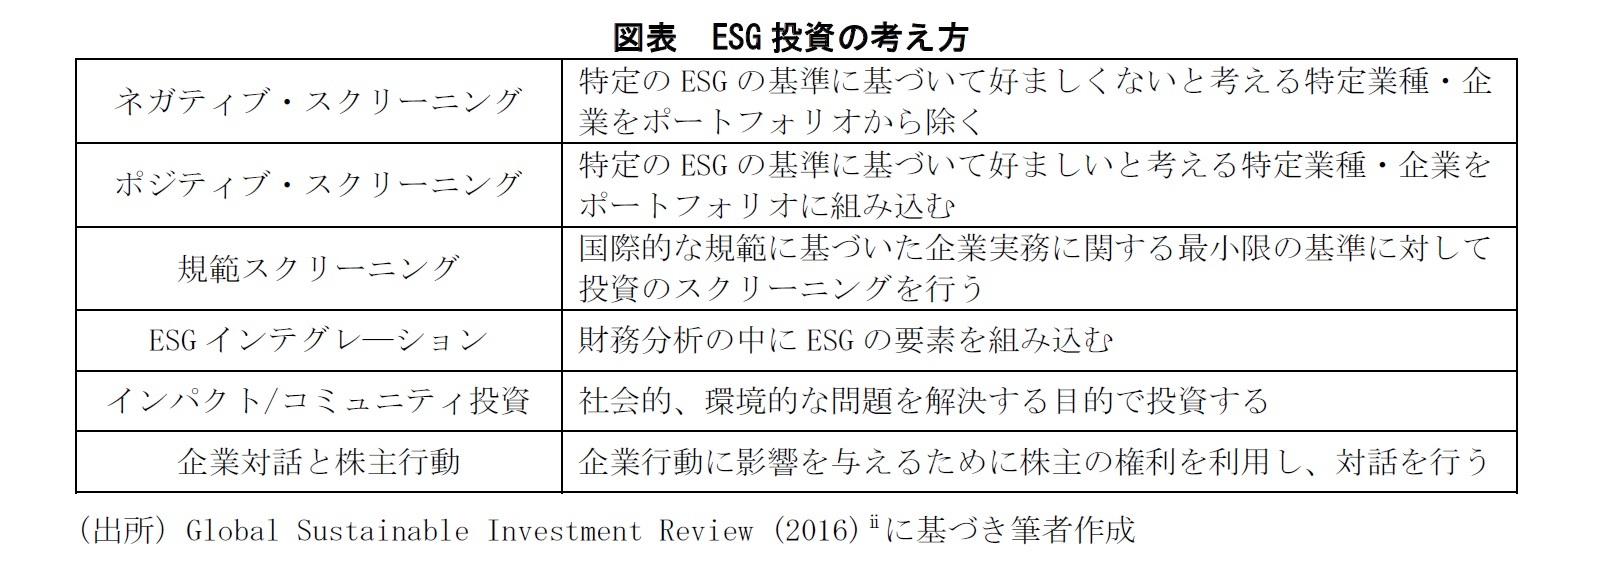 図表：ESG投資の考え方